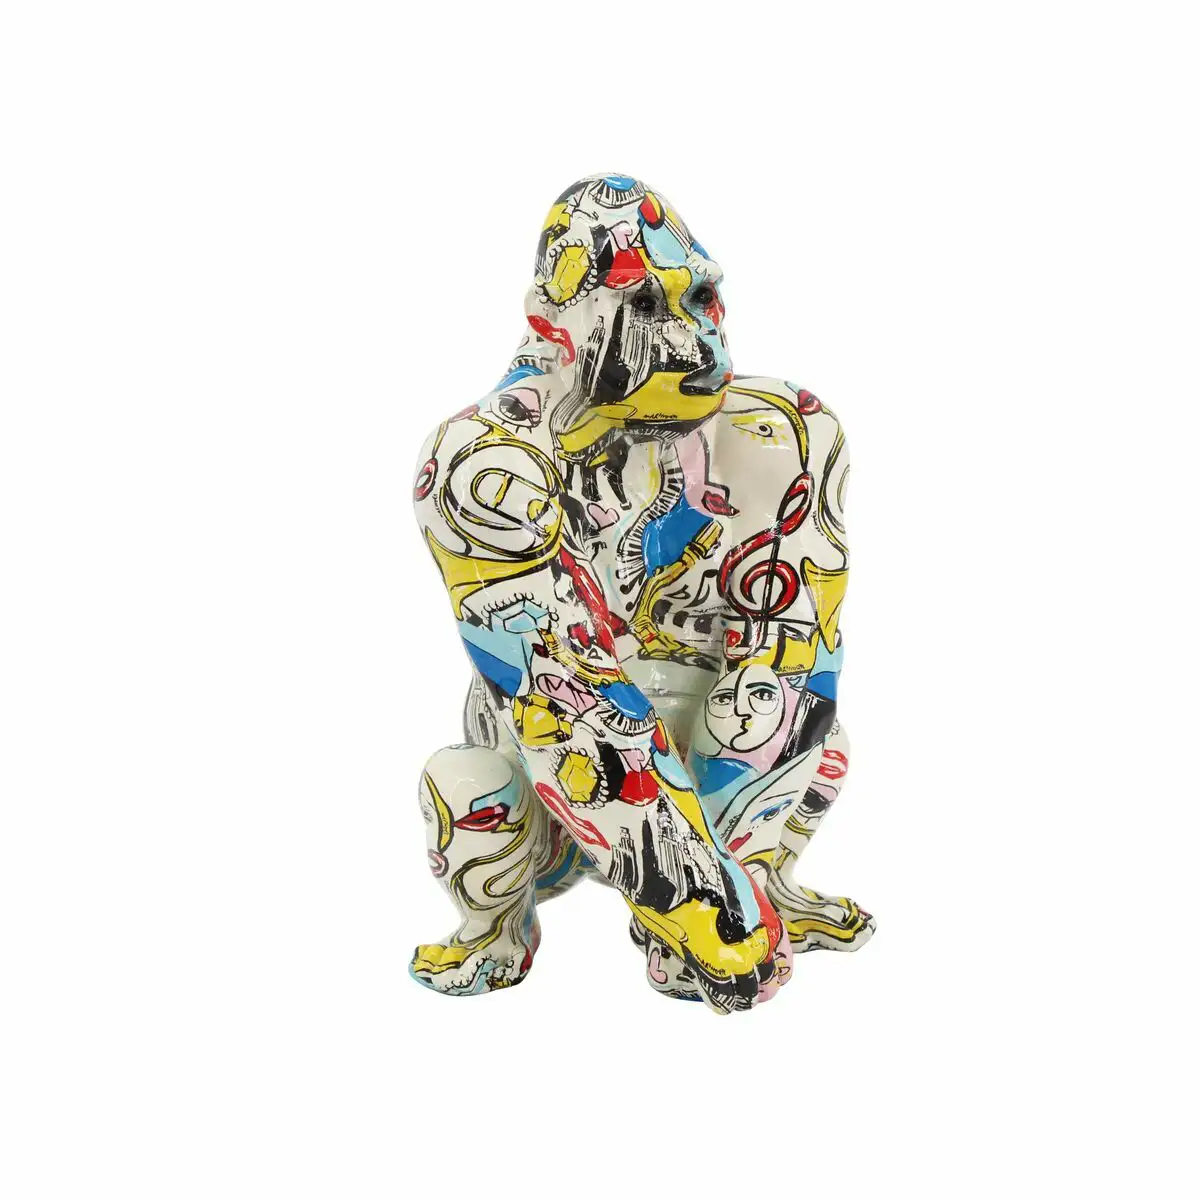 Figurine decorative dkd home decor 14 x 13 x 22 cm multicouleur gorille moderne_8866. DIAYTAR SENEGAL - Là où Choisir est un Acte d'Amour pour le Sénégal. Explorez notre gamme et choisissez des produits qui célèbrent la culture et l'artisanat du pays.